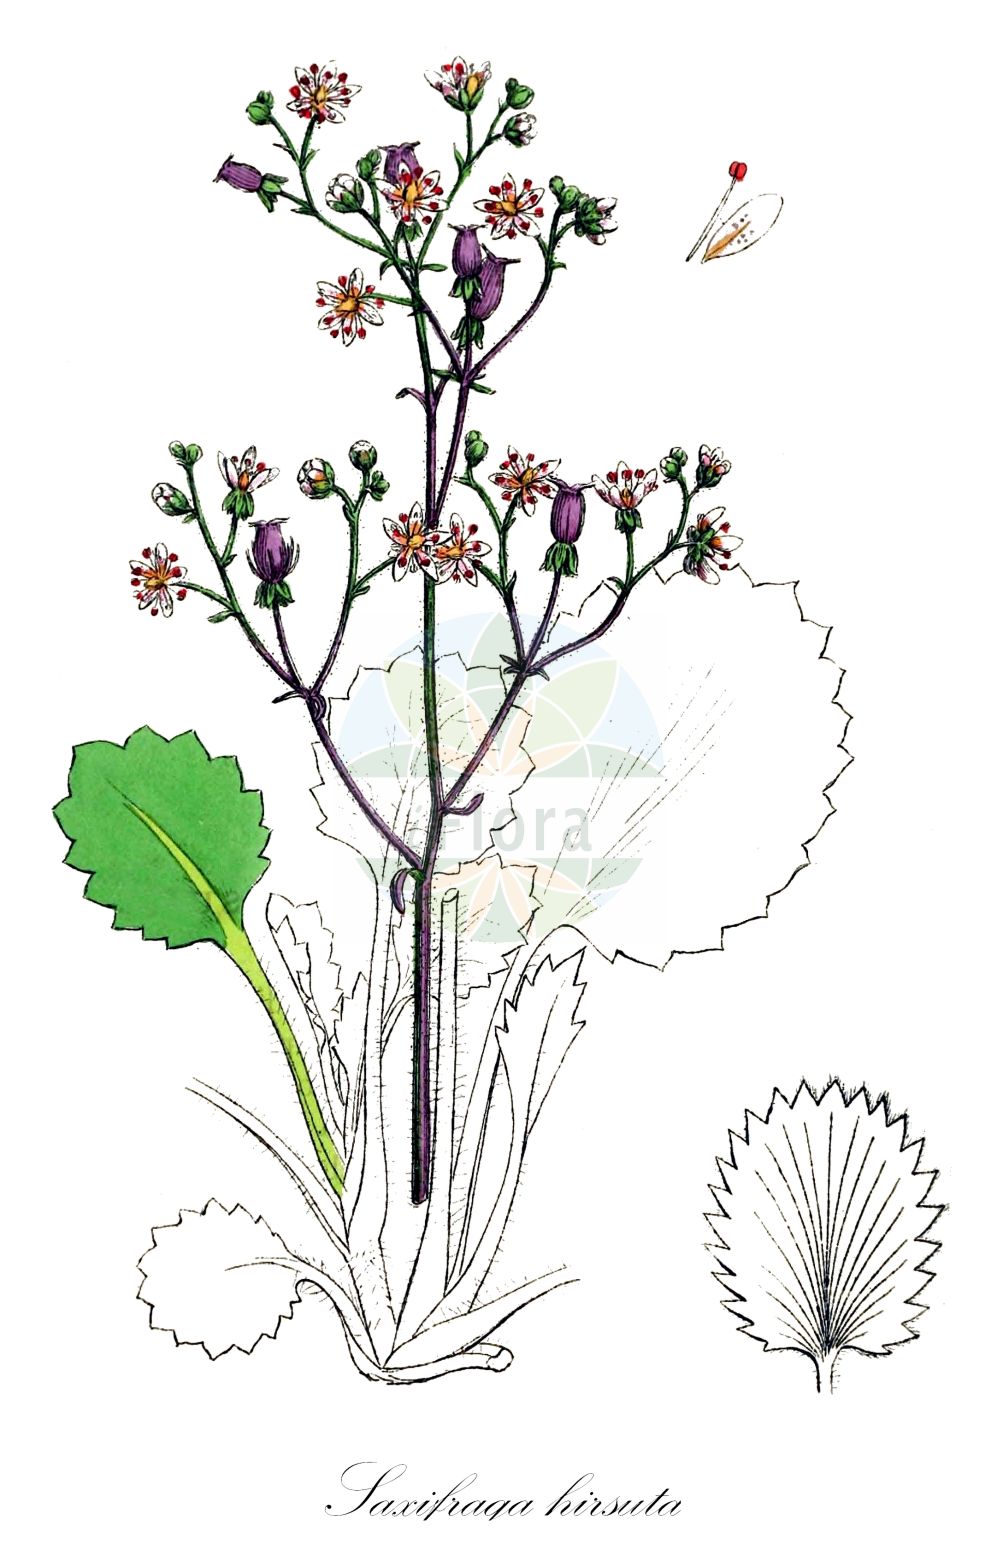 Historische Abbildung von Saxifraga hirsuta (Kidney Saxifrage). Das Bild zeigt Blatt, Bluete, Frucht und Same. ---- Historical Drawing of Saxifraga hirsuta (Kidney Saxifrage). The image is showing leaf, flower, fruit and seed.(Saxifraga hirsuta,Kidney Saxifrage,Saxifraga hirsuta,Saxifraga,Steinbrech,Saxifrage,Saxifragaceae,Steinbrechgewächse,Saxifrage family,Blatt,Bluete,Frucht,Same,leaf,flower,fruit,seed,Sowerby (1790-1813))